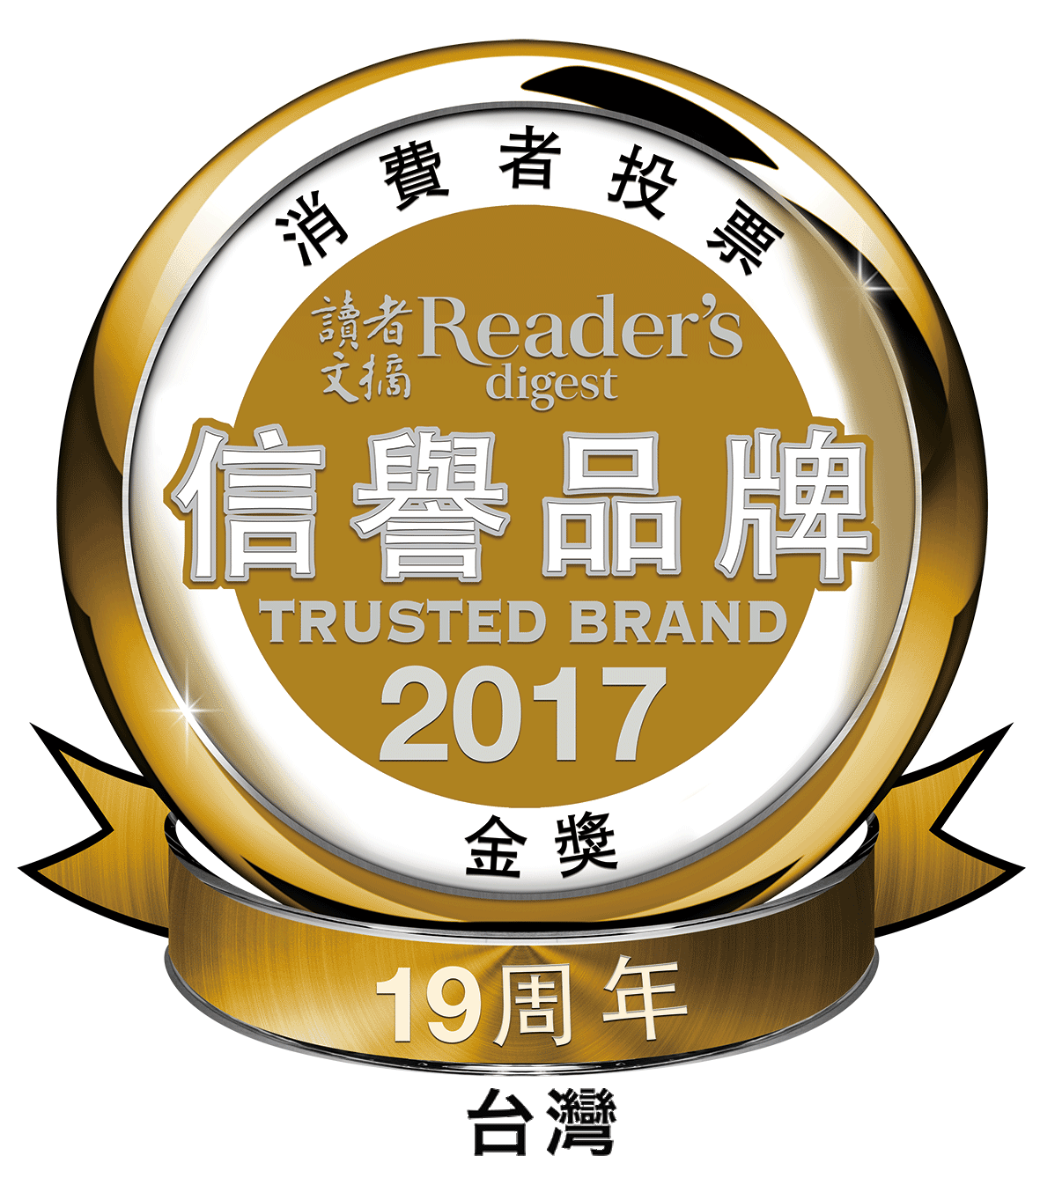 2017年讀者文摘信譽品牌金獎標章